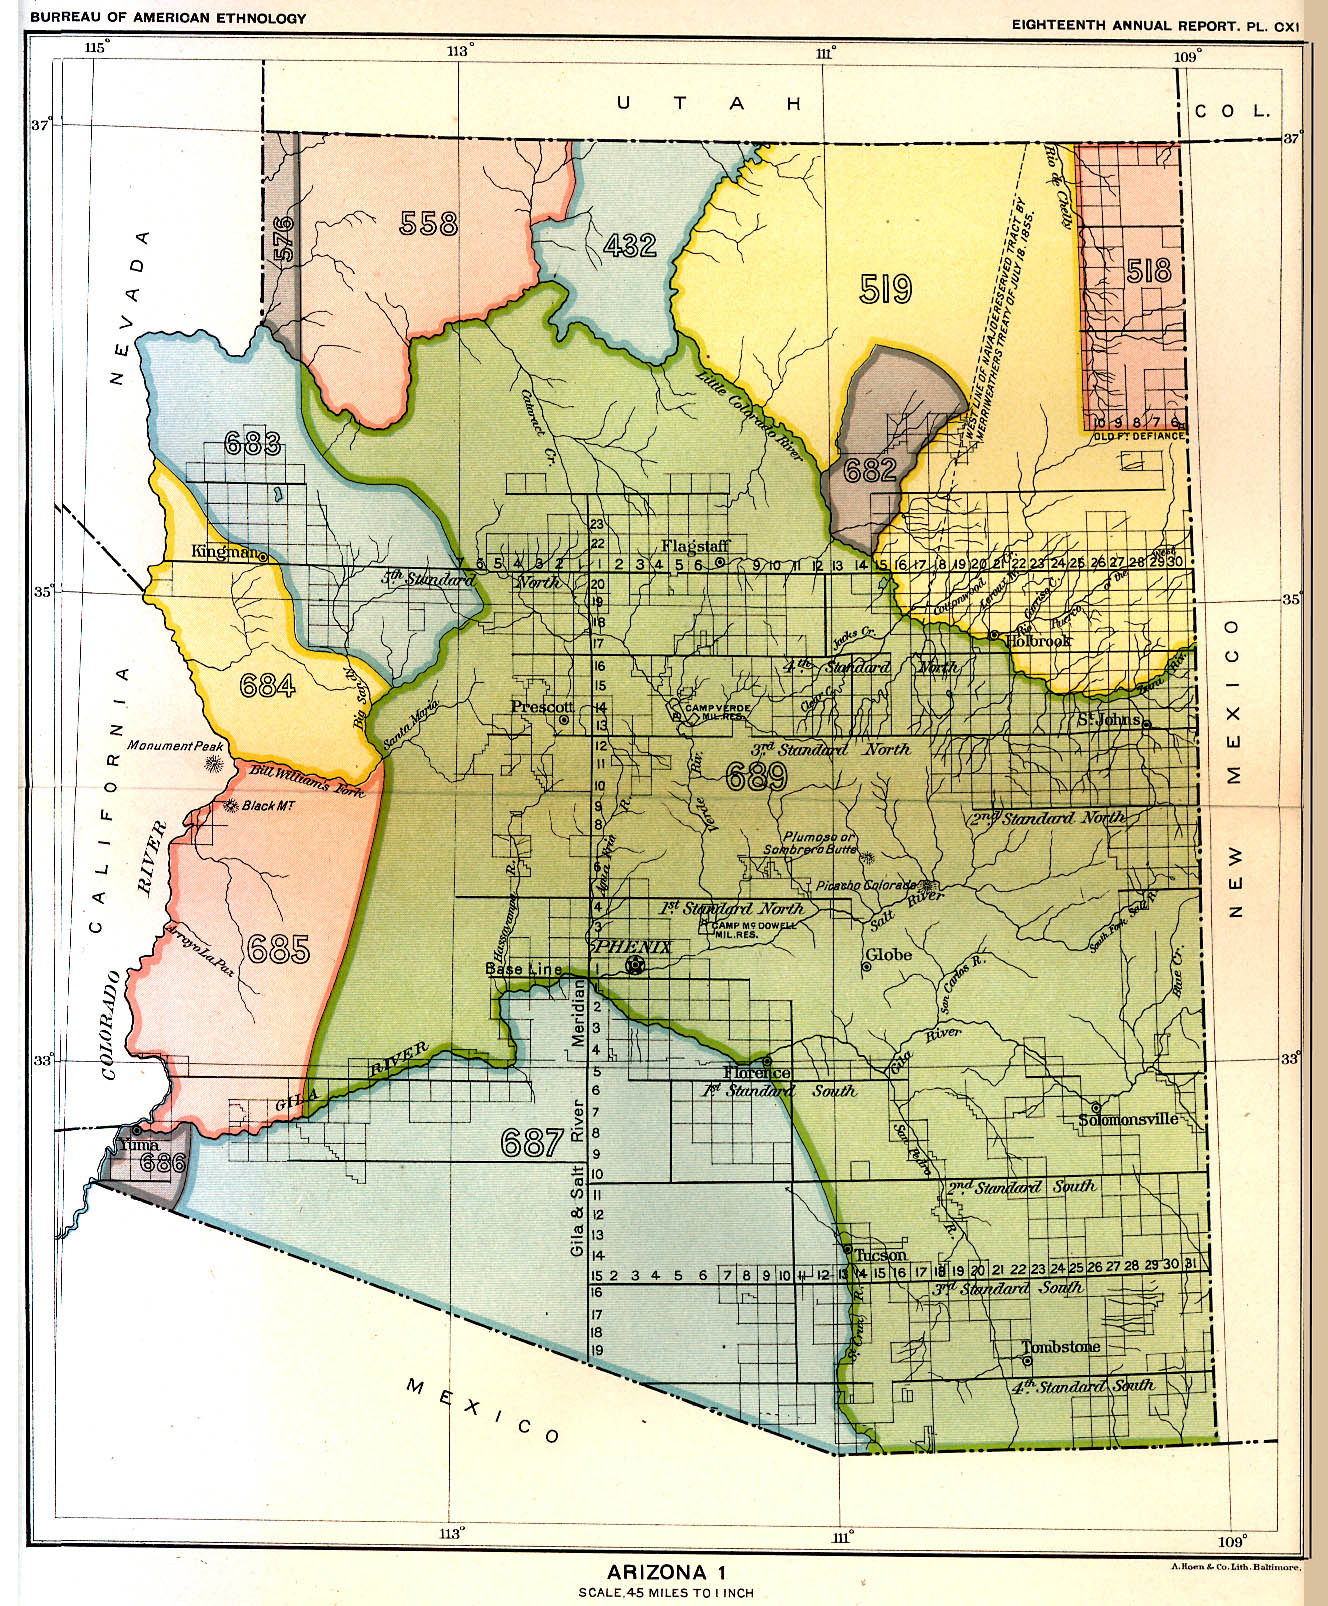 Arizona 1, Map 3